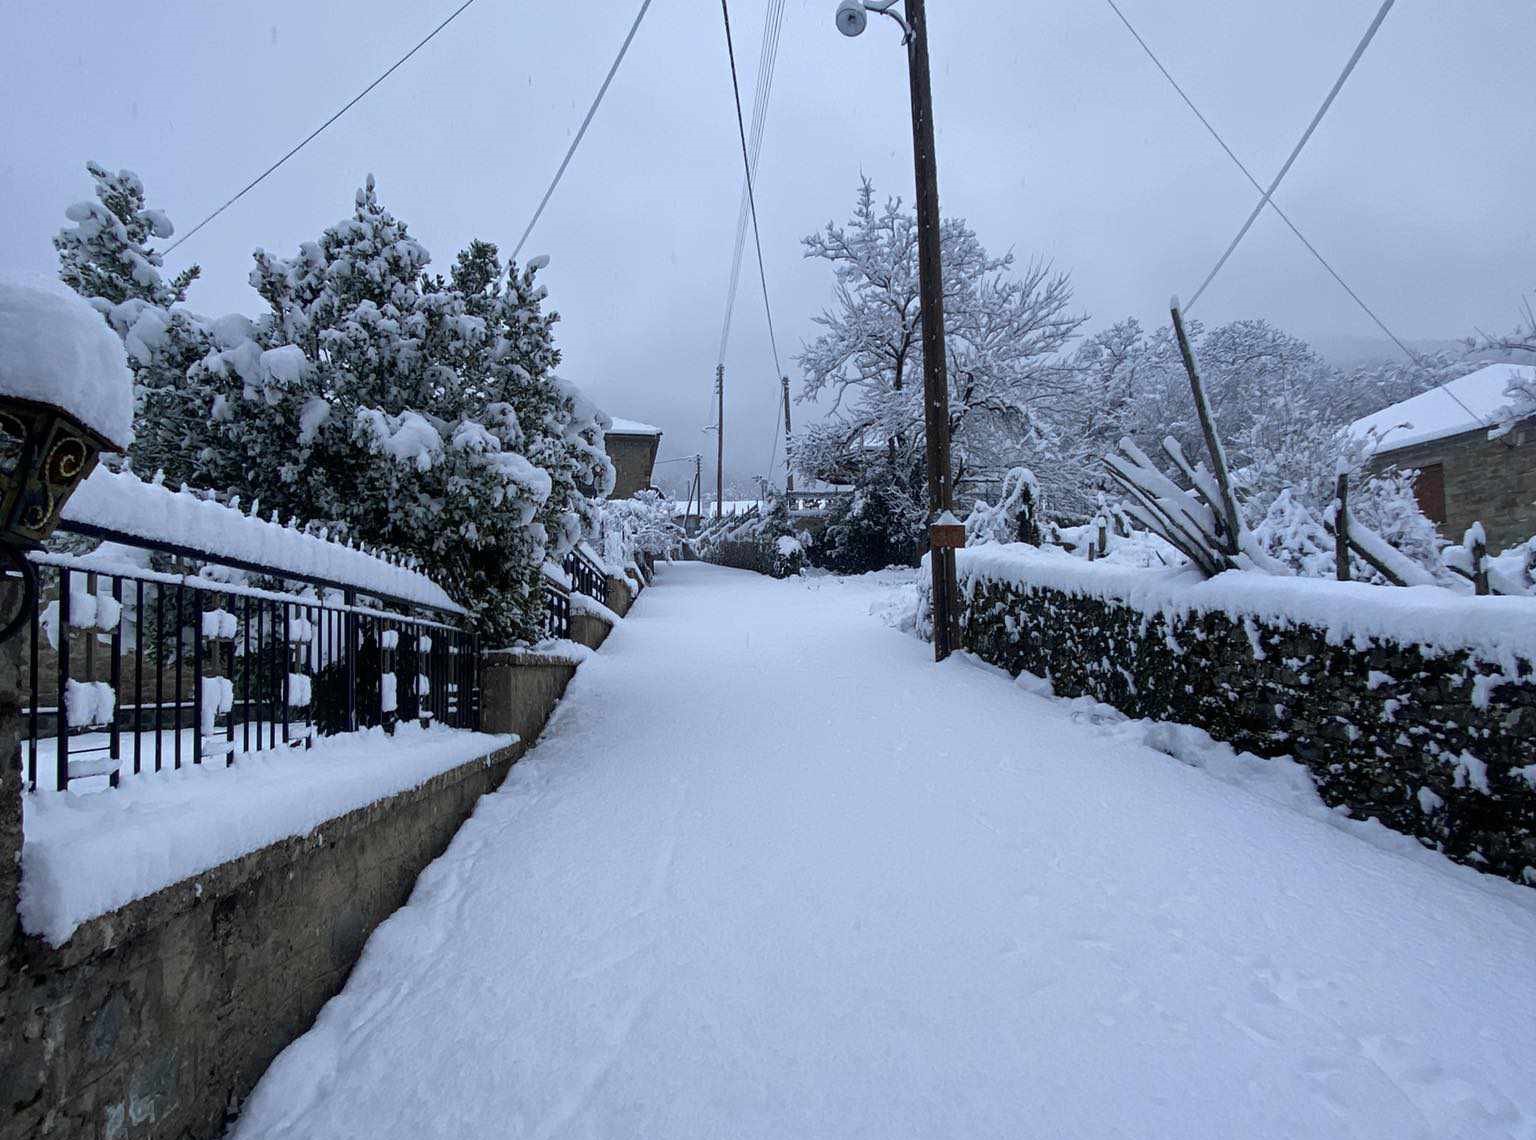 Ανατολικό Ζαγόρι: Περιπέτεια για 5 Θεσσαλονικείς που εγκλωβίστηκε το αυτοκίνητό τους στο χιόνι